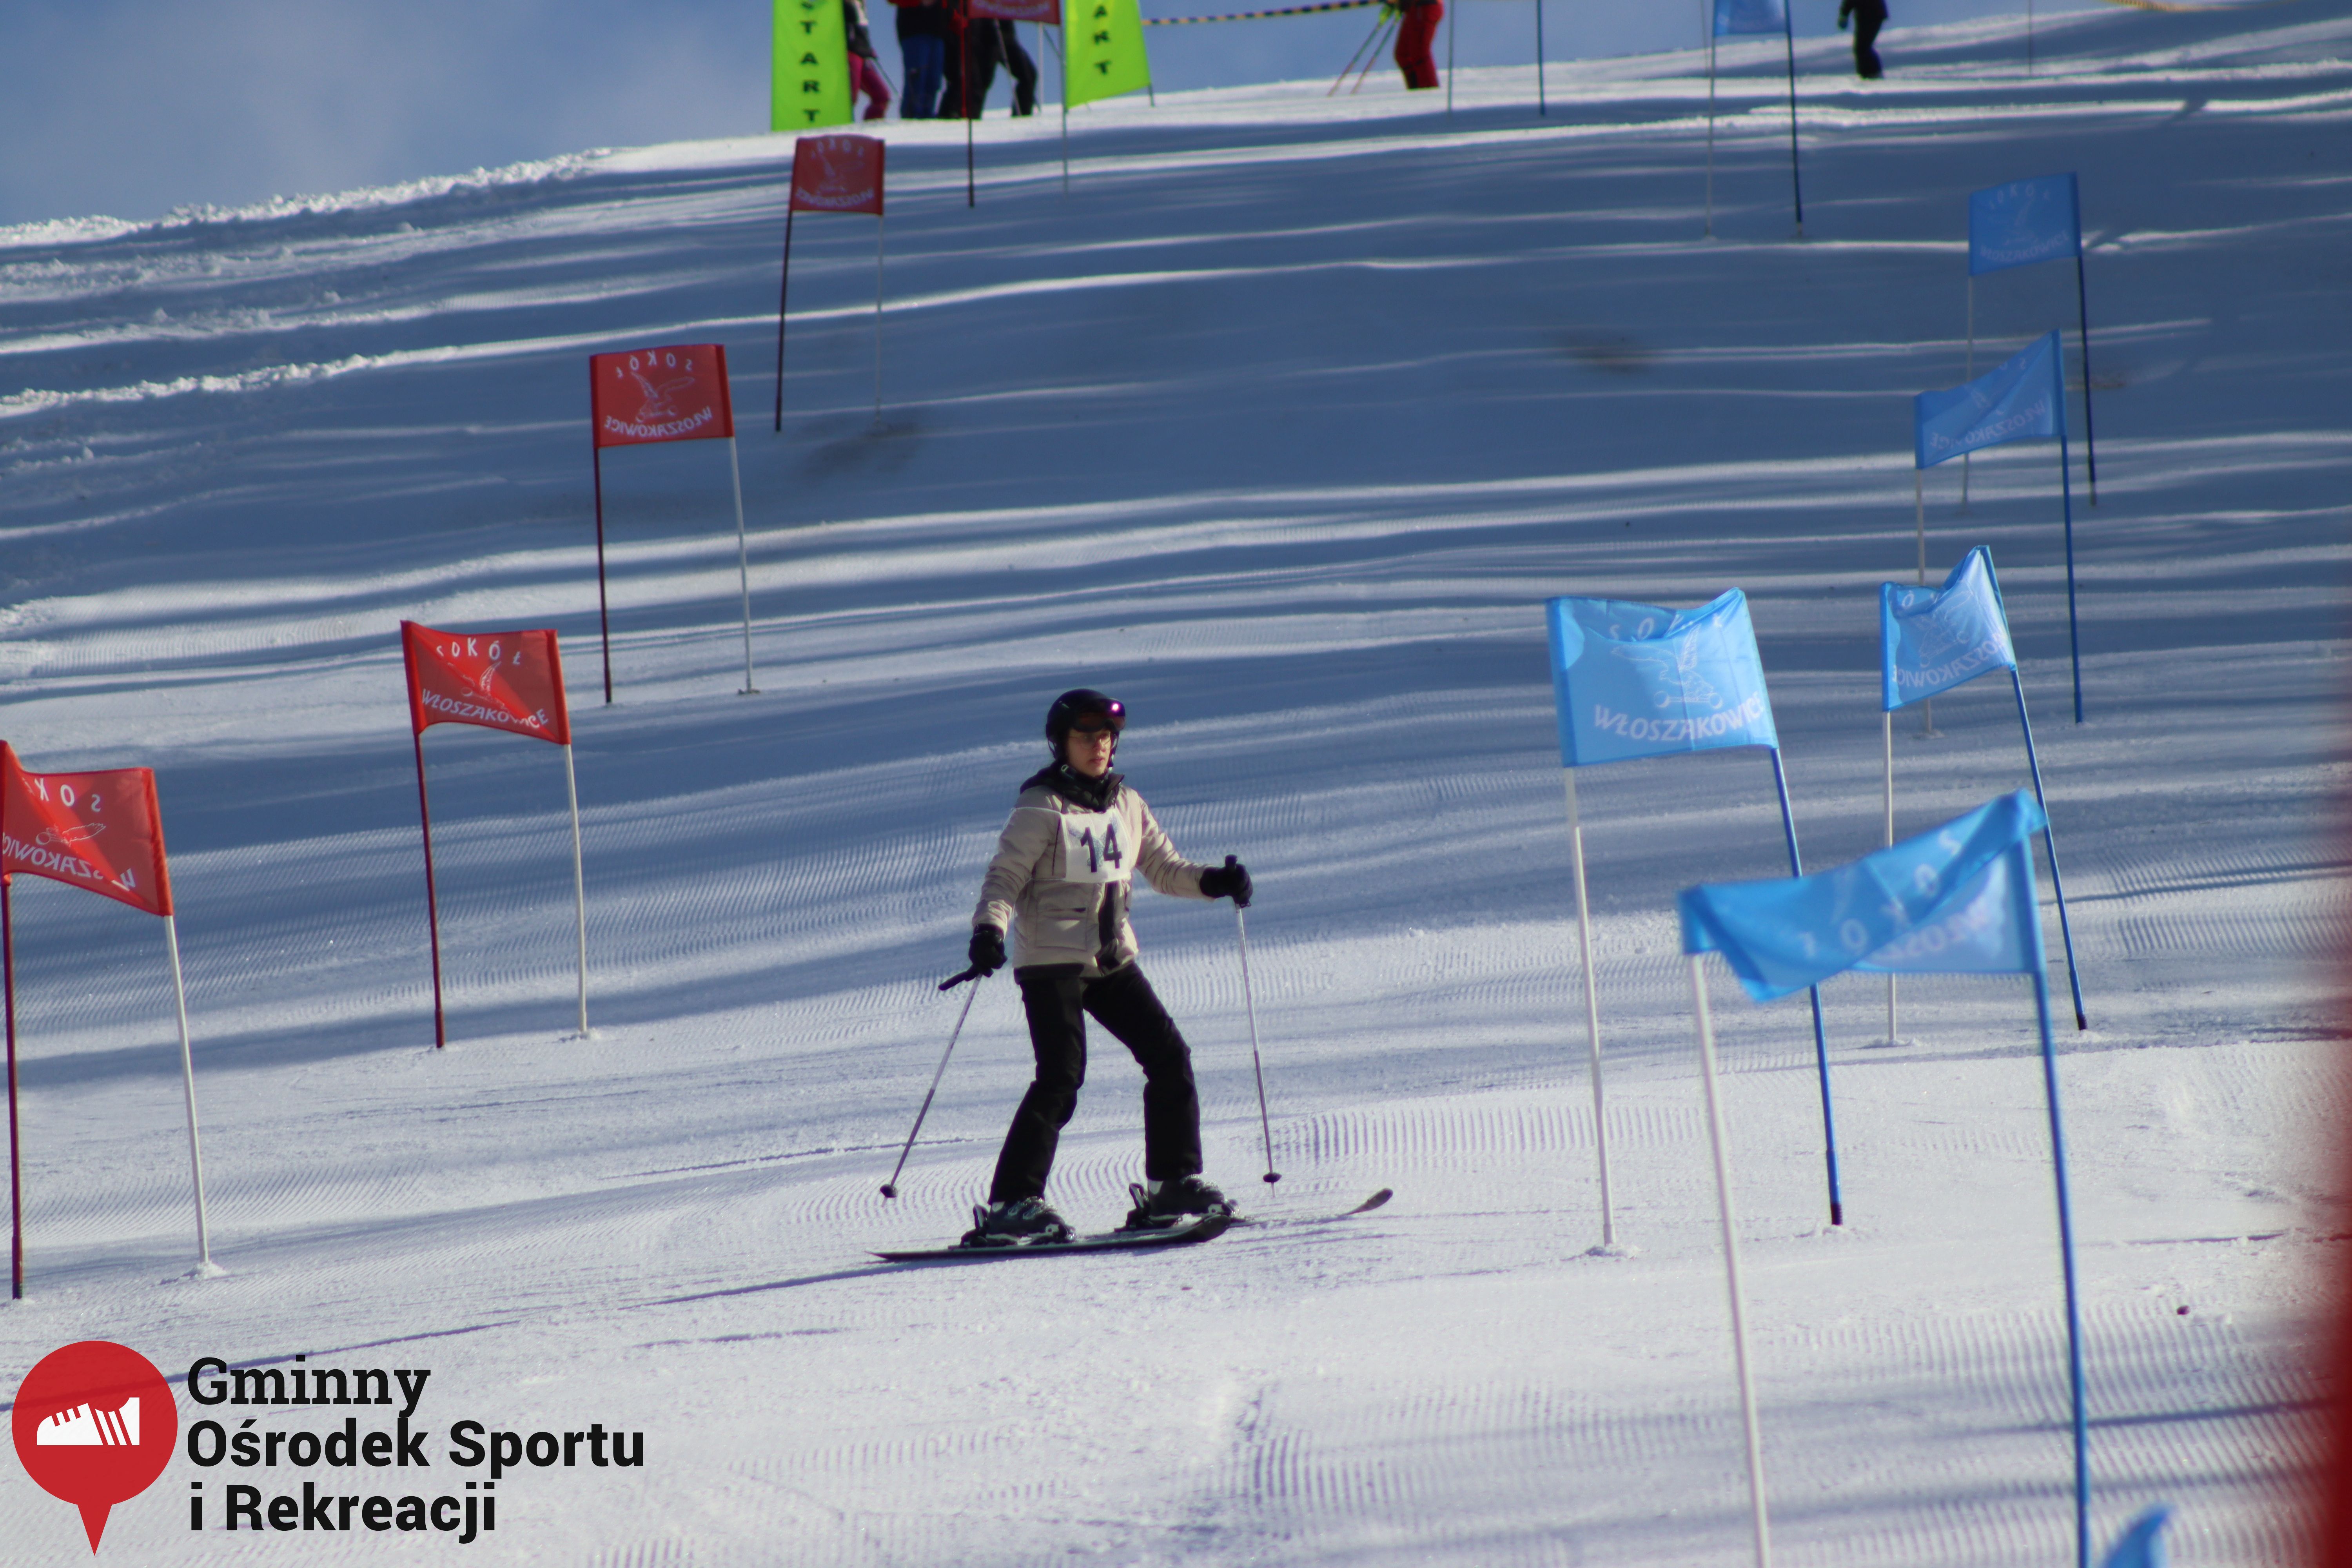 2022.02.12 - 18. Mistrzostwa Gminy Woszakowice w narciarstwie079.jpg - 1,82 MB